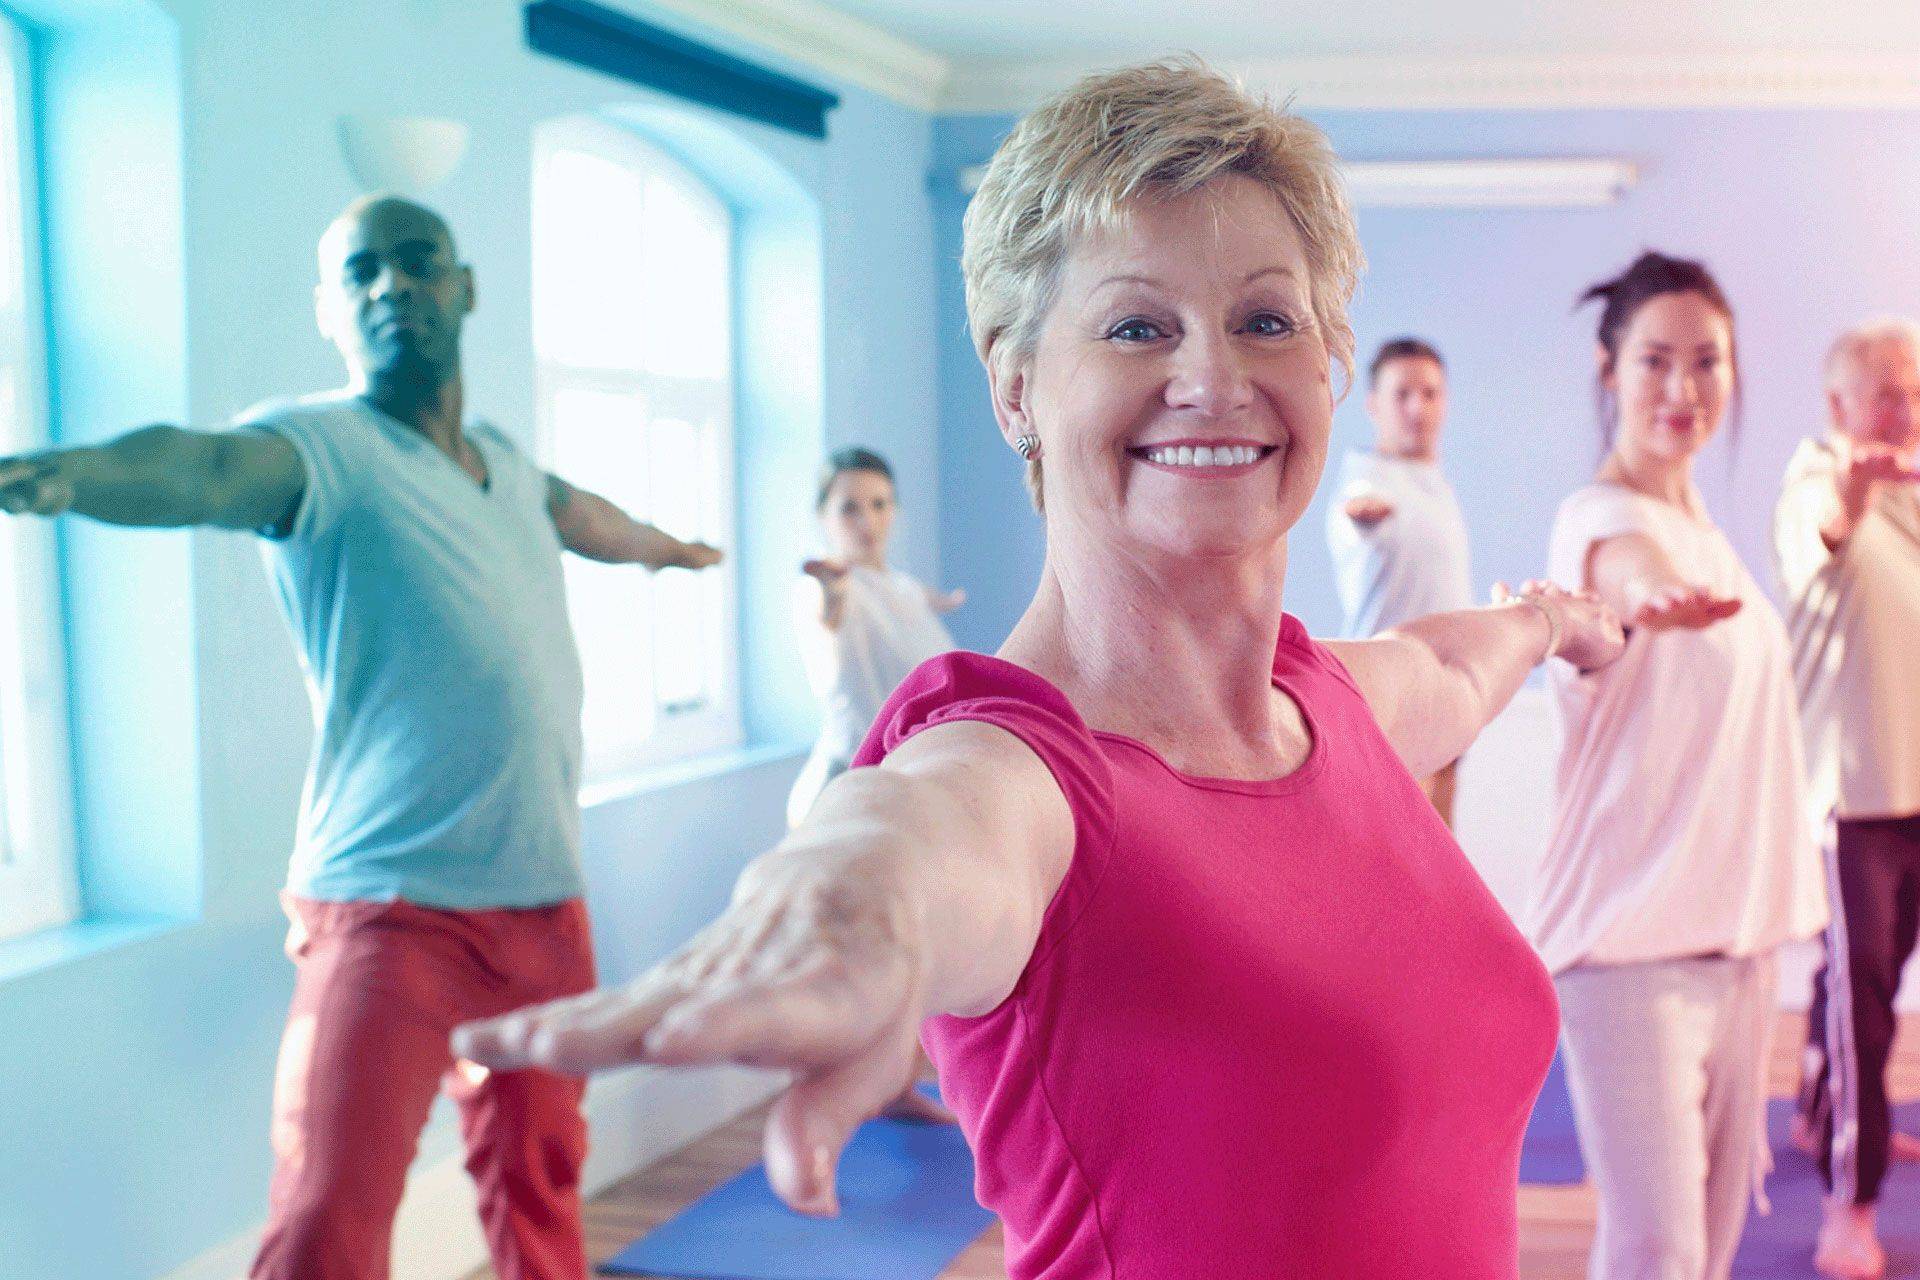 Йога для пожилых: комплексы упражнений для выполнения в домашних условиях - для начинающих, в 50 лет, в 60 лет, от артура паллаха, от бессонницы